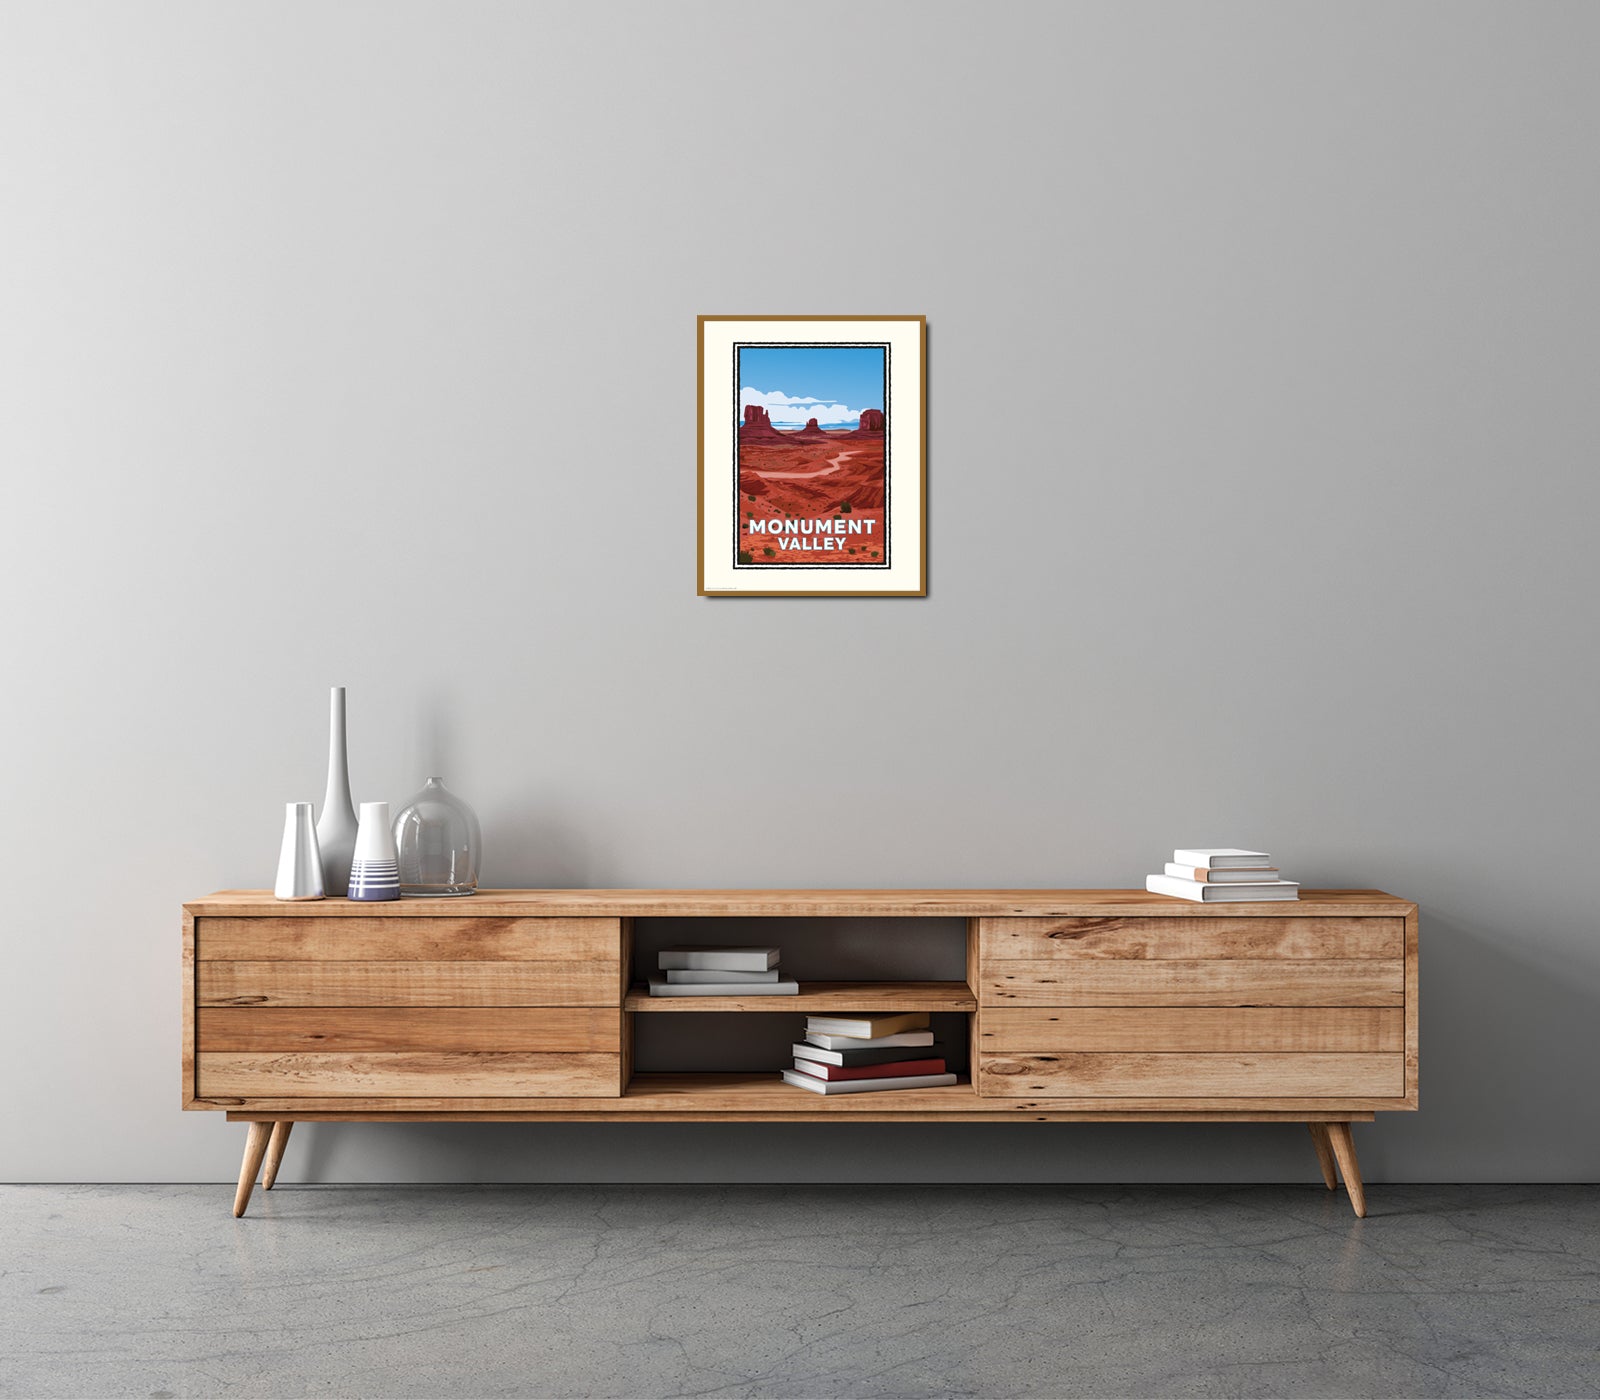 Landmark AZ | Monument Valley Art Print